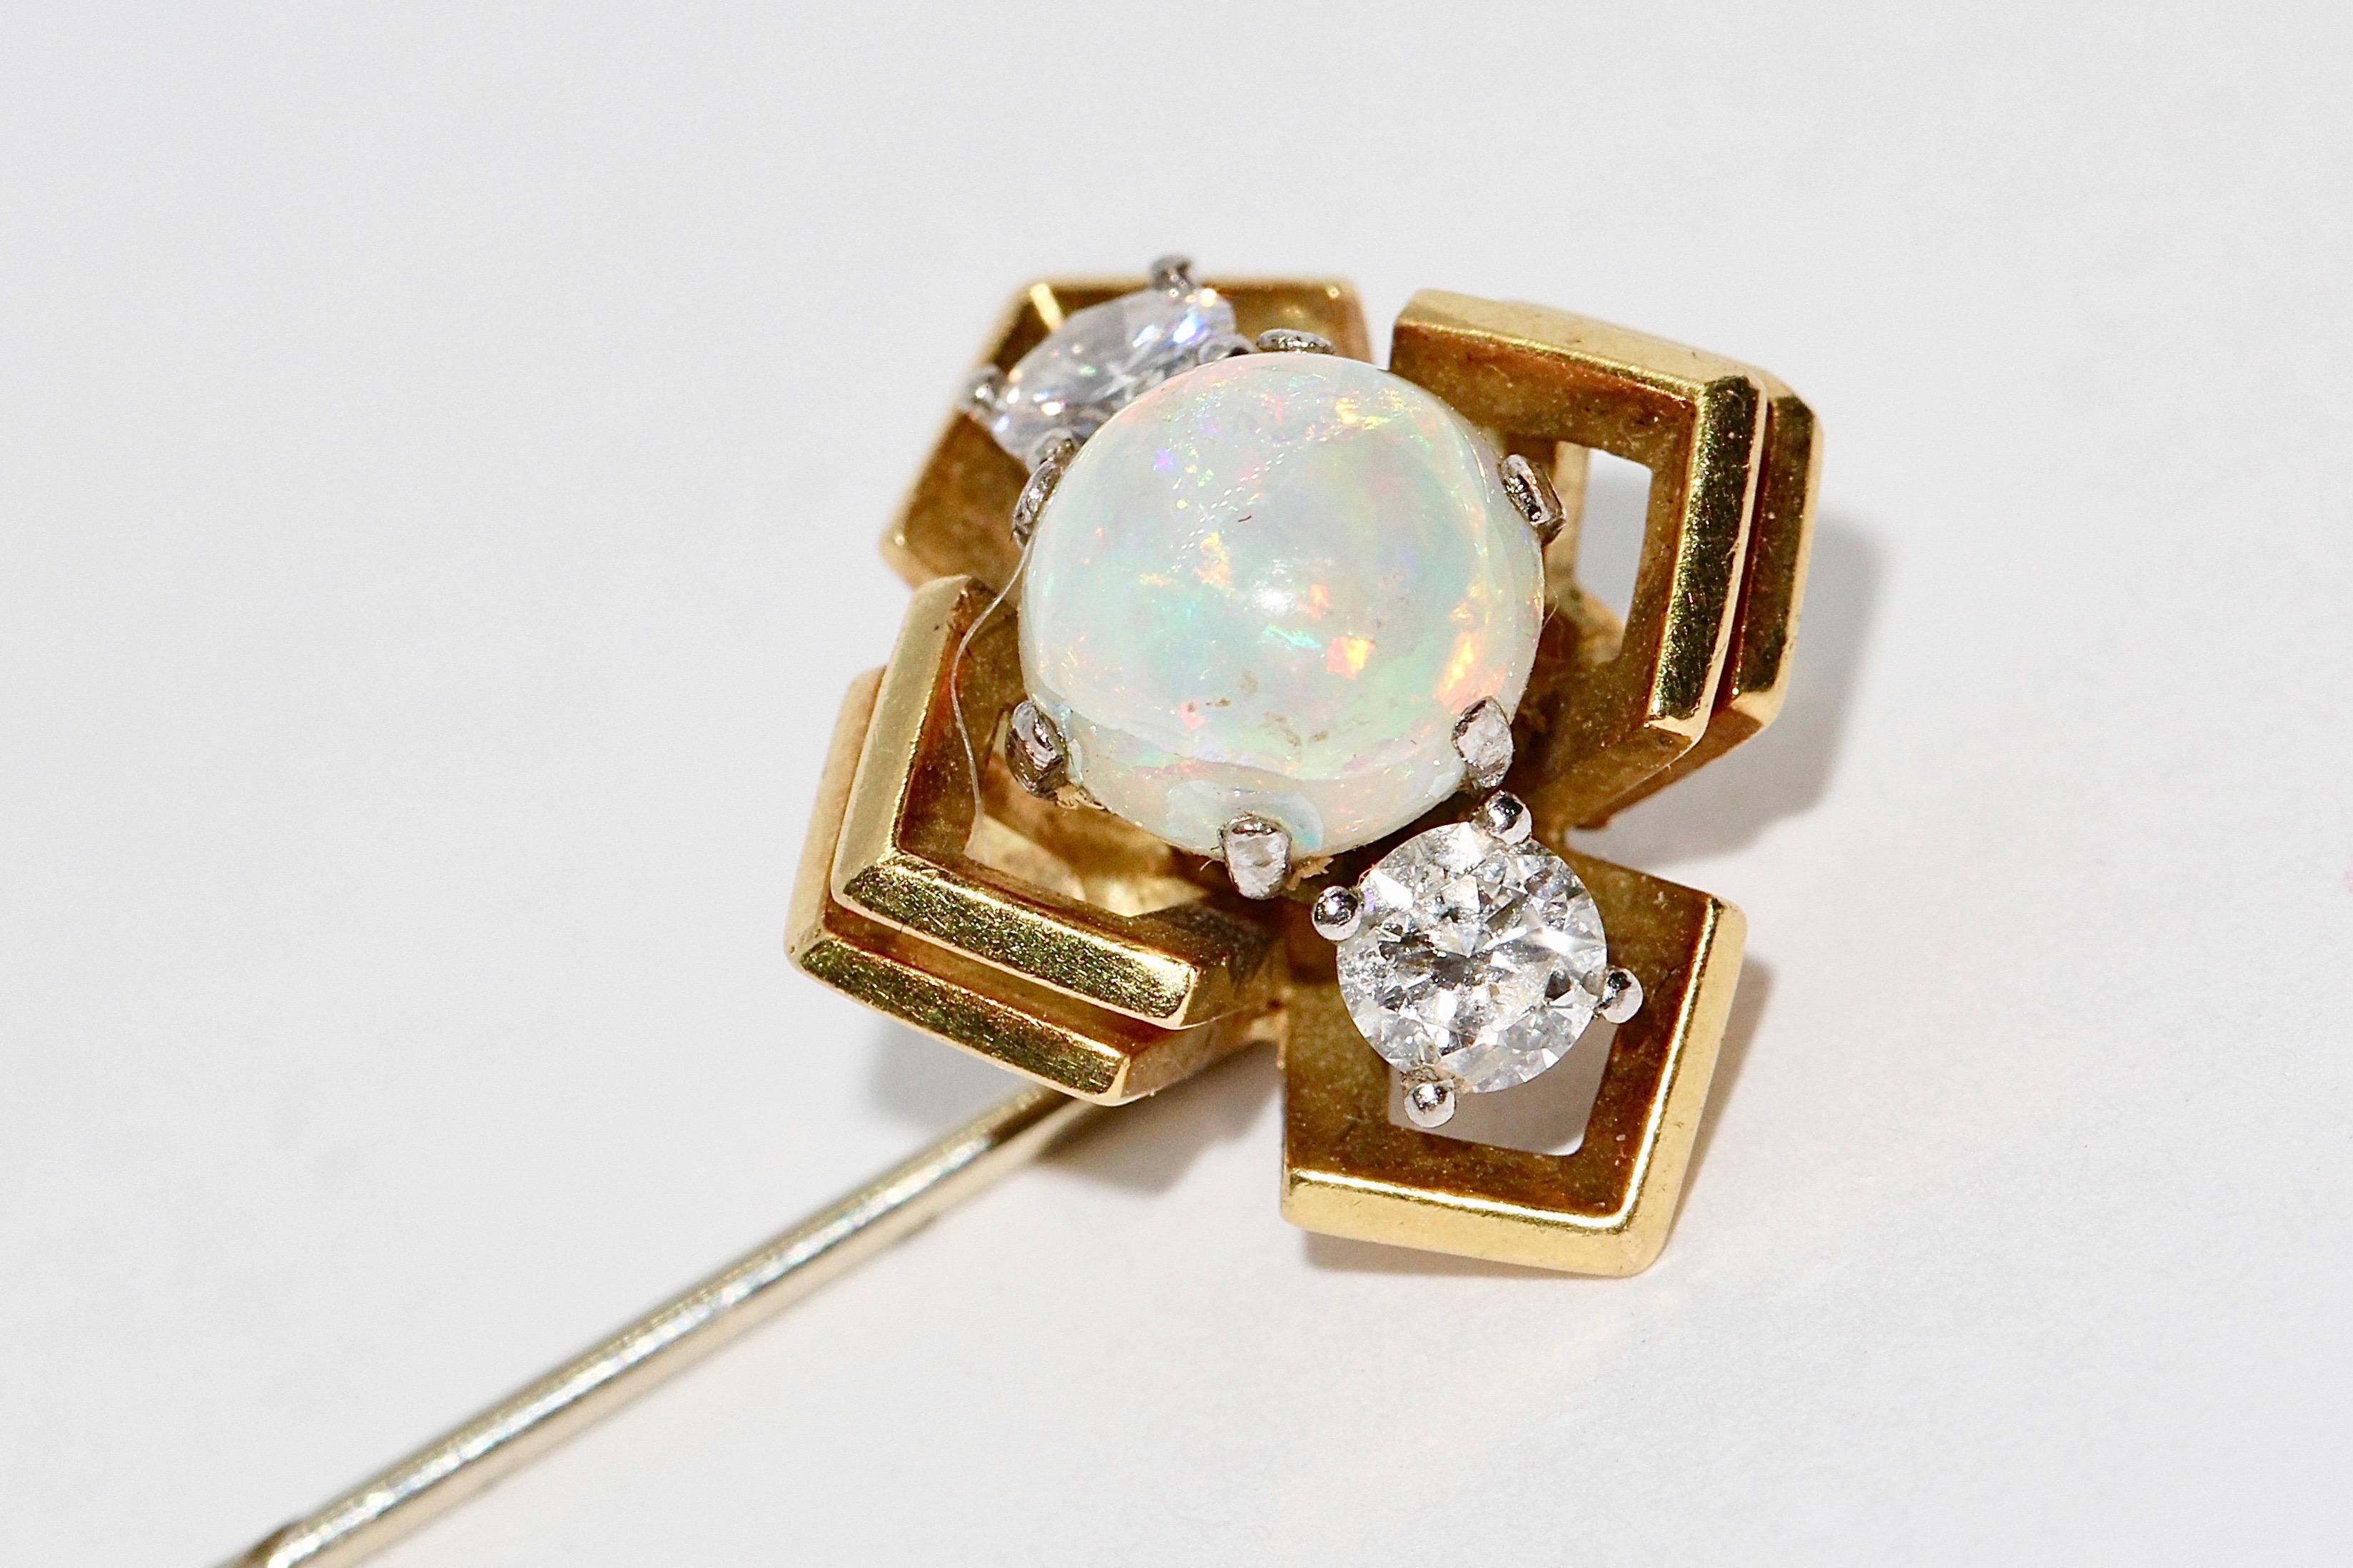 Hübsche Goldnadel mit Opal und zwei Diamant-Solitären.

Diamanten jeweils ca. 0,16 Karat, sehr gute Qualität!